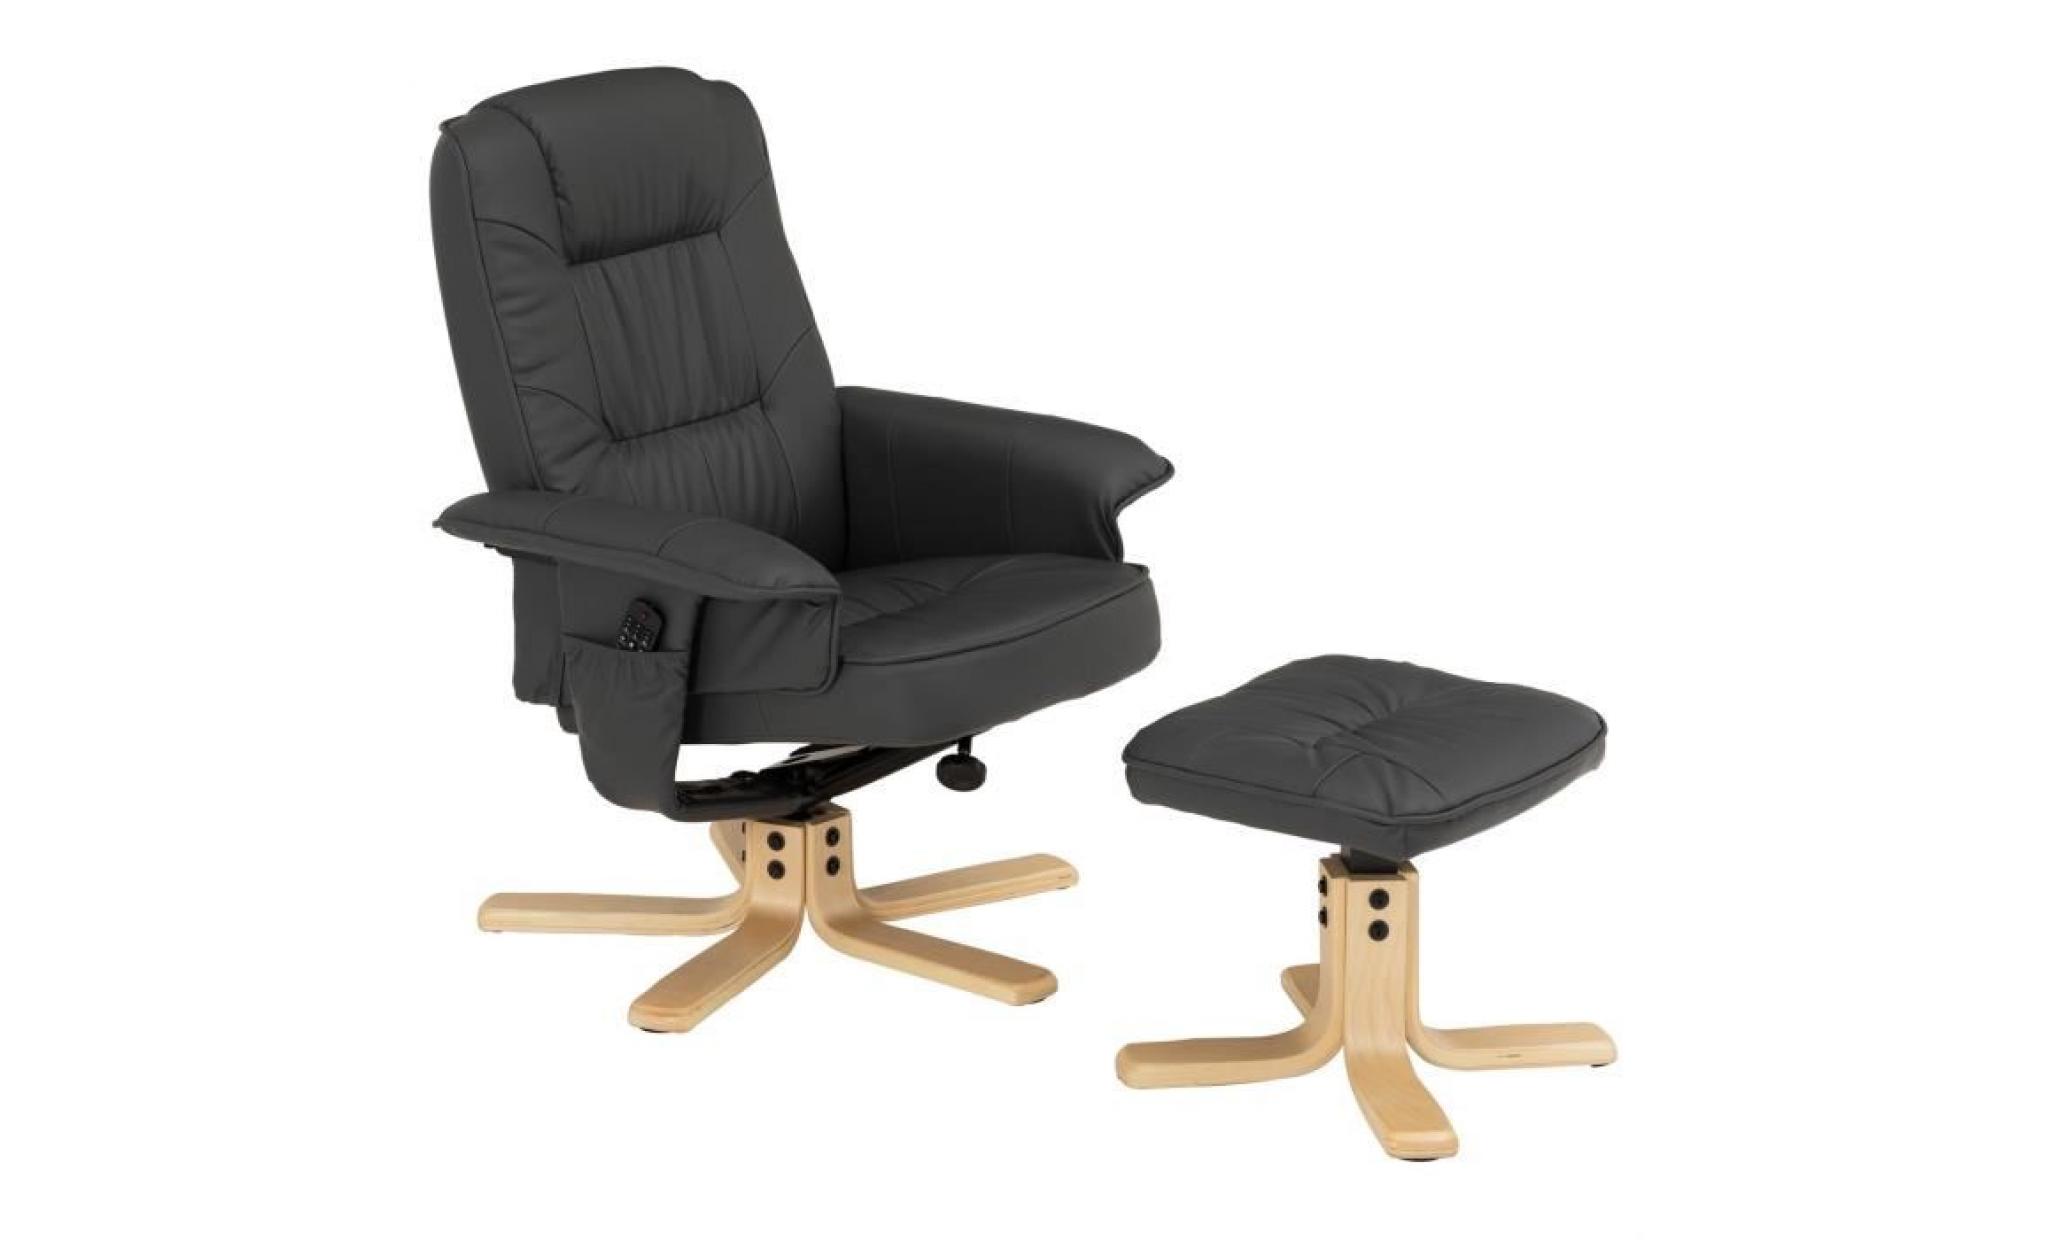 fauteuil de relaxation charly avec repose pieds pouf siège pivotant dossier inclinable assise rembourrée relax, en synthétique gris